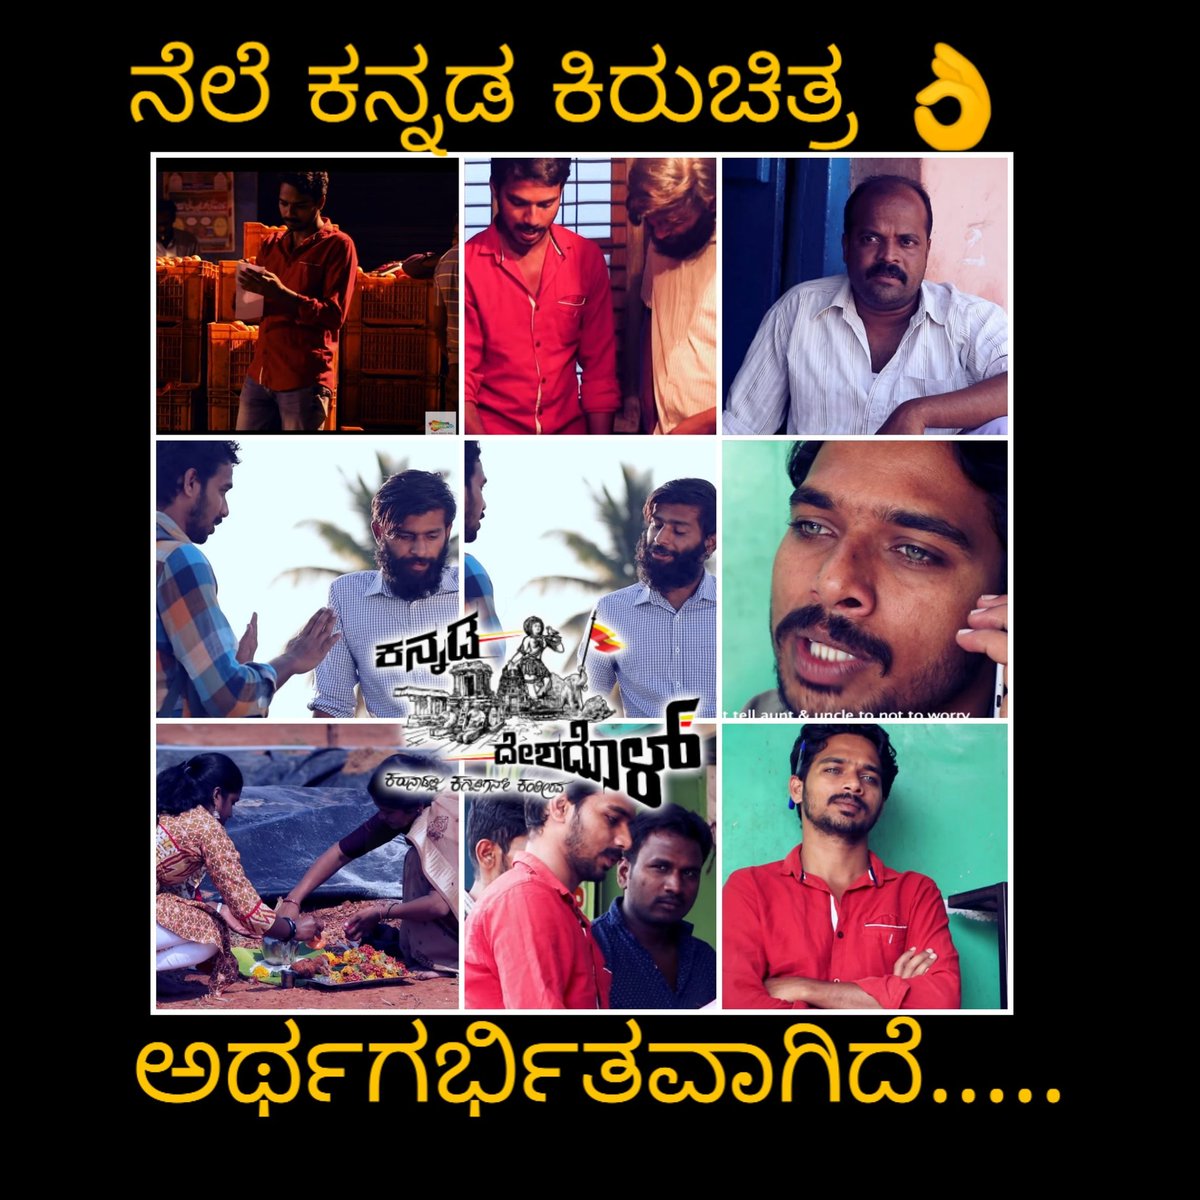 ಅರ್ಥಗರ್ಭಿತವಾದ #ನೆಲೆ ಕಿರುಚಿತ್ರ ಎಲ್ಲಾ ಕಜೆ ಸೌಂಡ್ ಮಾಡುತ್ತಿದೆ..

youtu.be/kvoKJwU_OLw

#Nele #ShortFilm #Kallesh #HarishArasu @HarishVN1